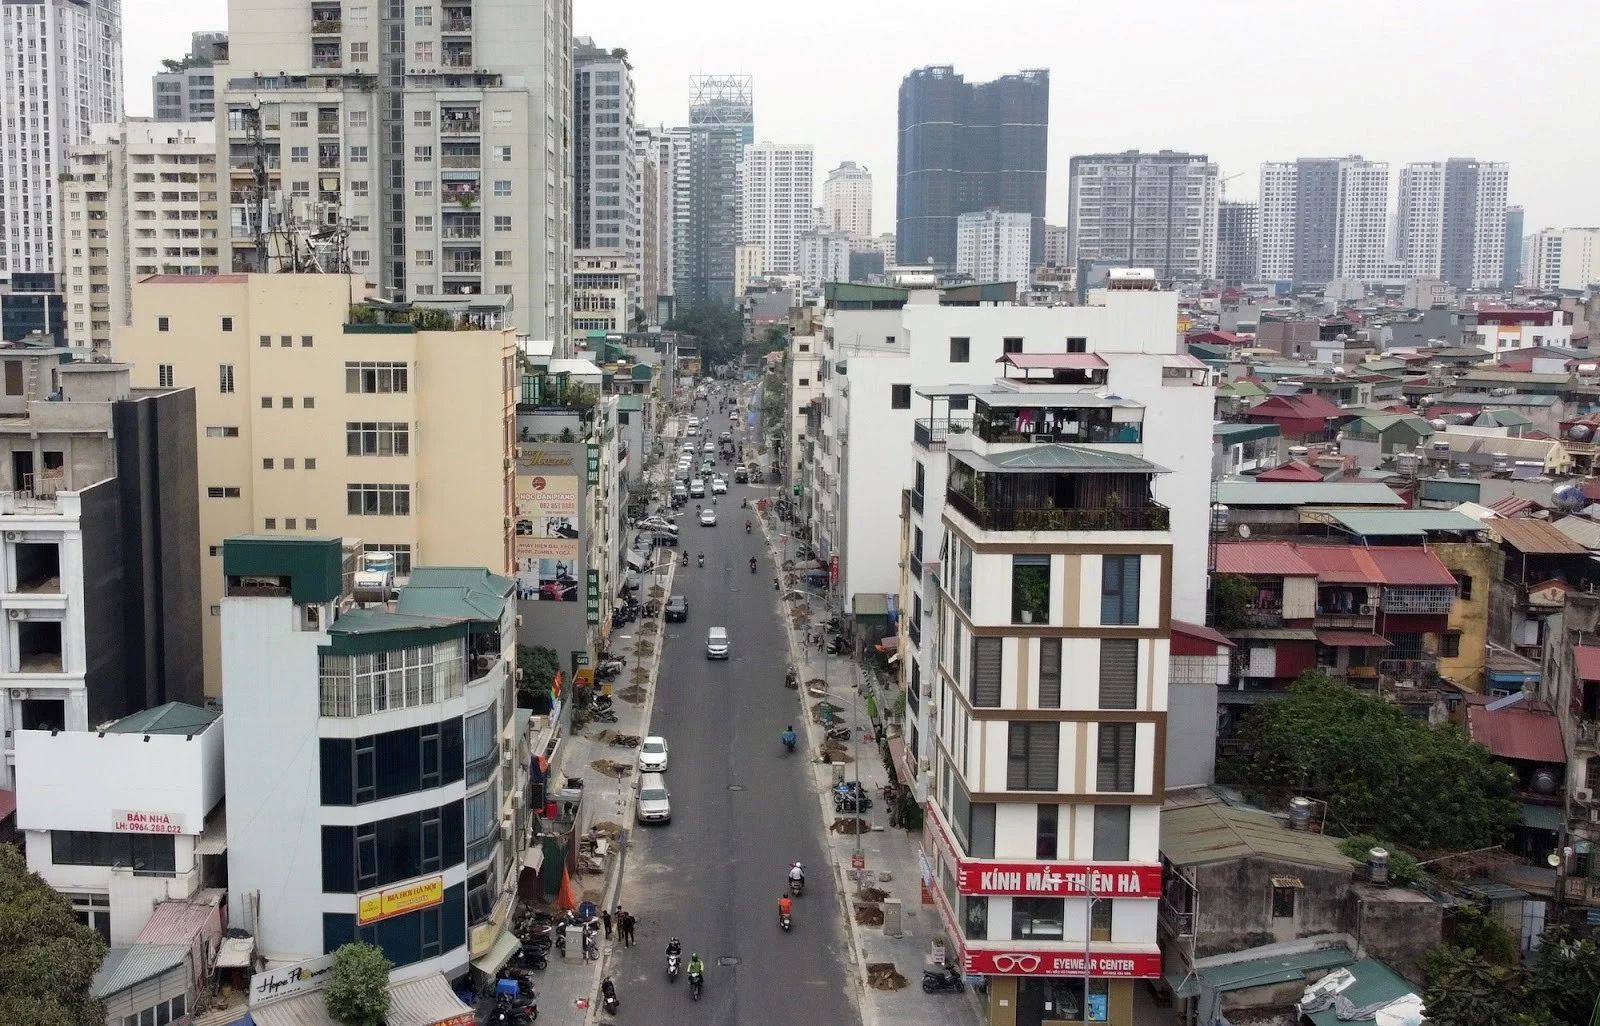 Bán nhà Hà Nội: Tham khảo giá nhà thổ cư quận Thanh Xuân cập nhật mới nhất